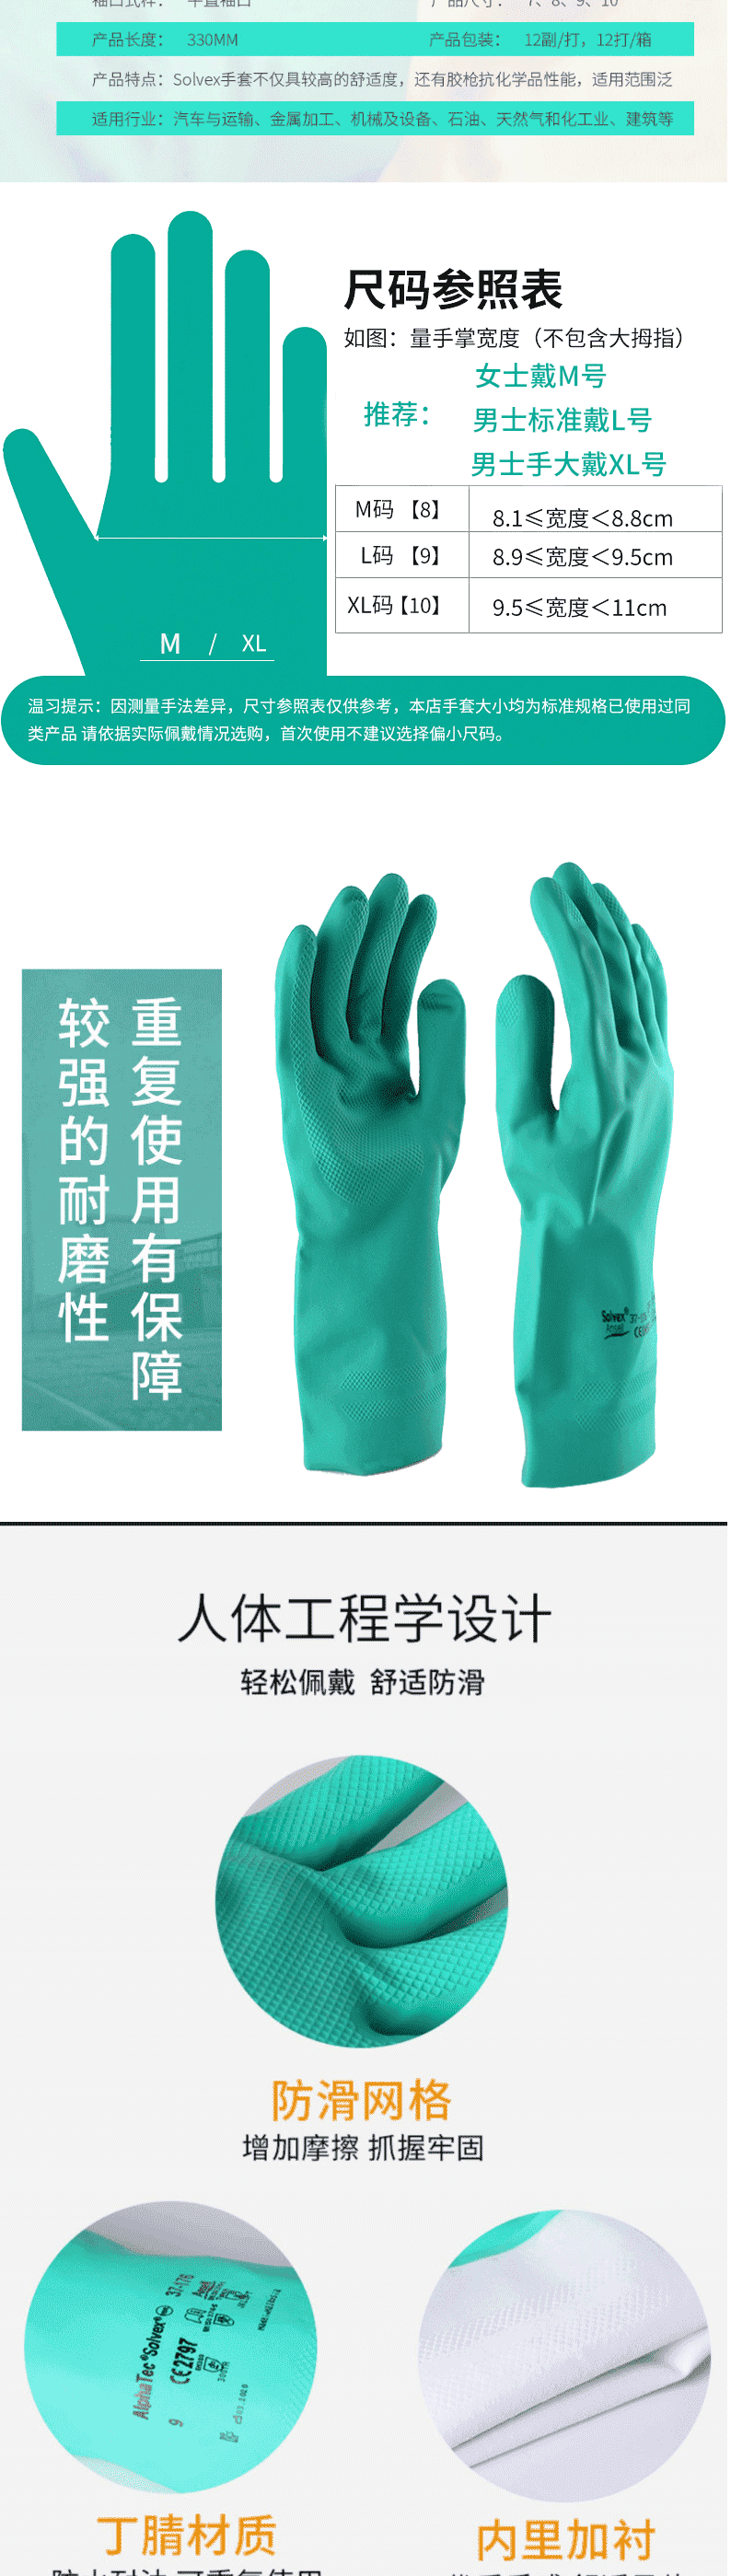 安思尔(Ansell)37-176 丁腈橡胶全涂层防化手套